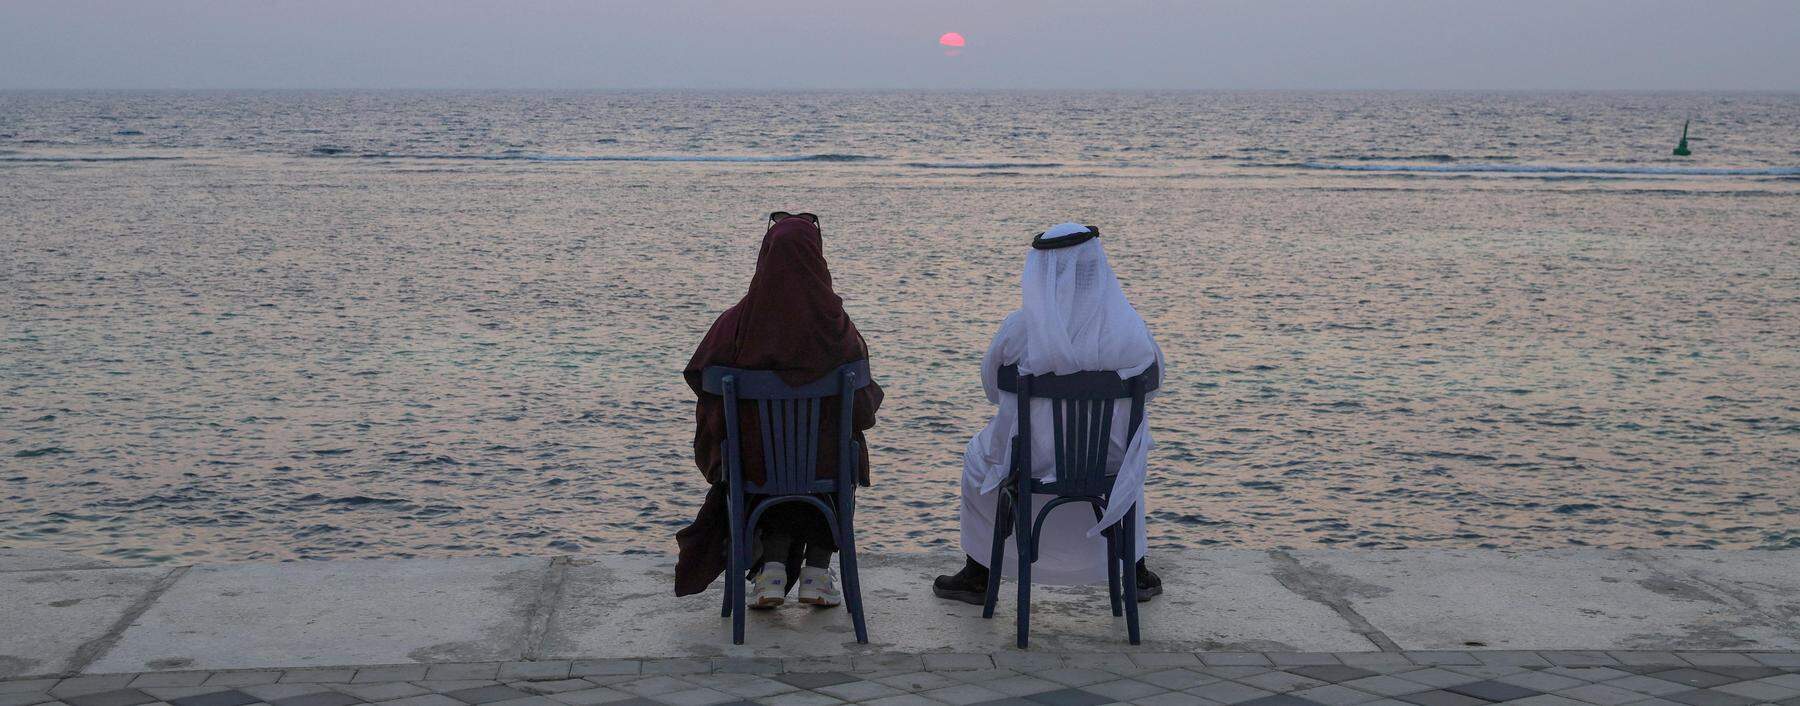 Ein Blick in die Ferne. Am Roten Meer sollen neue Hotel-Resorts entstehen, als Teil der „Vision 2030“ zur wirtschaftlichen und gesellschaftlichen Modernisierung Saudiarabiens.